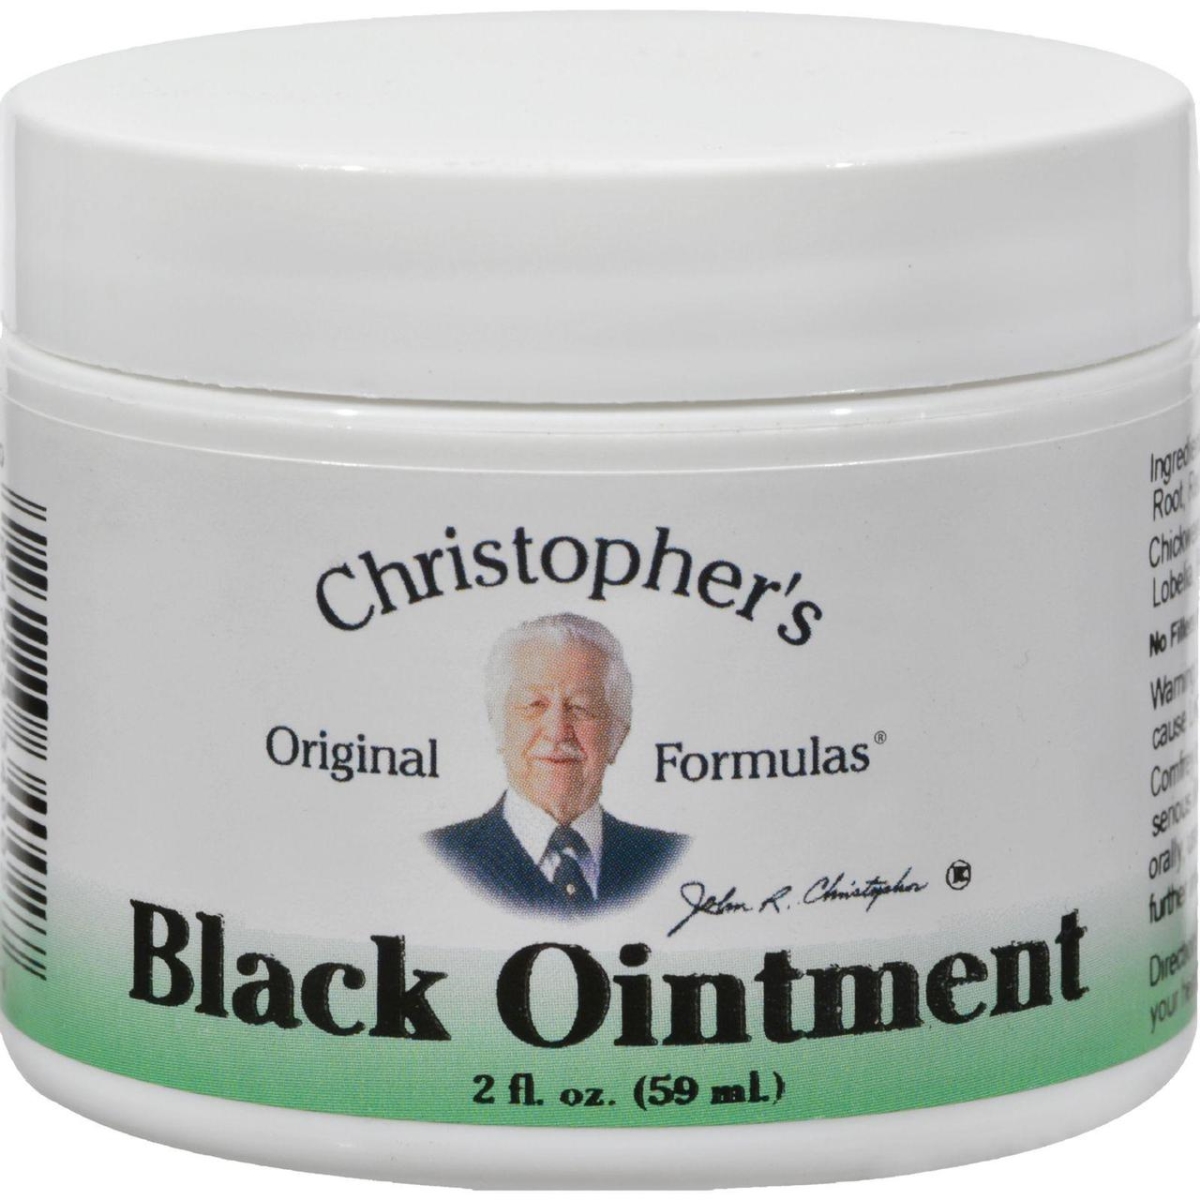 Hg0758318 2 Oz Original Formulas Black Ointment